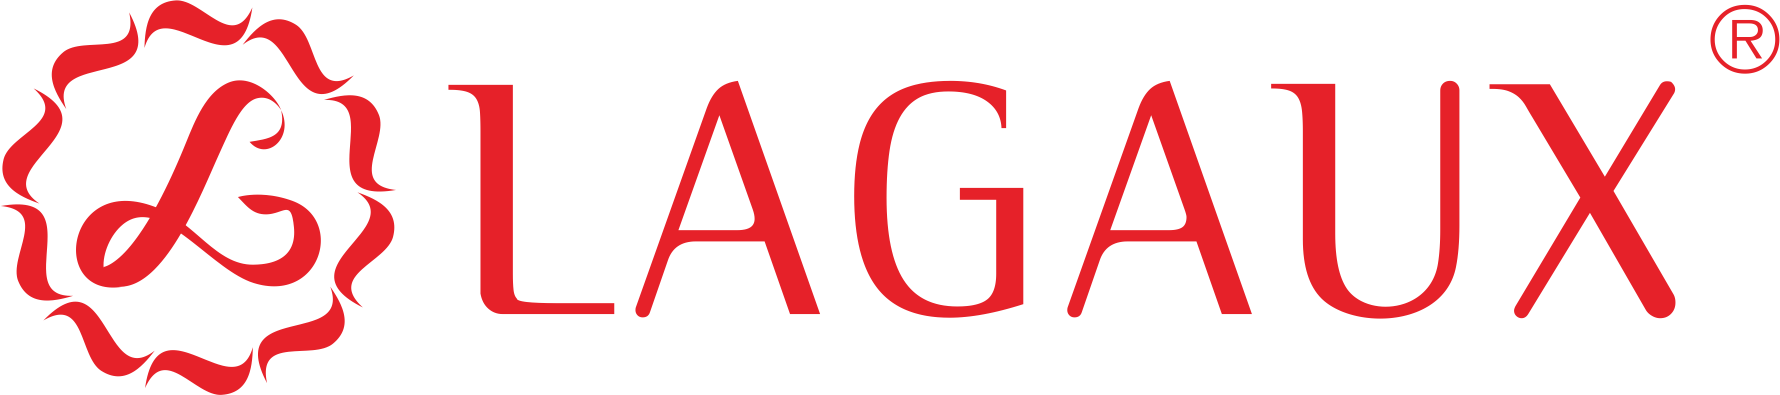 拉歌logo.png